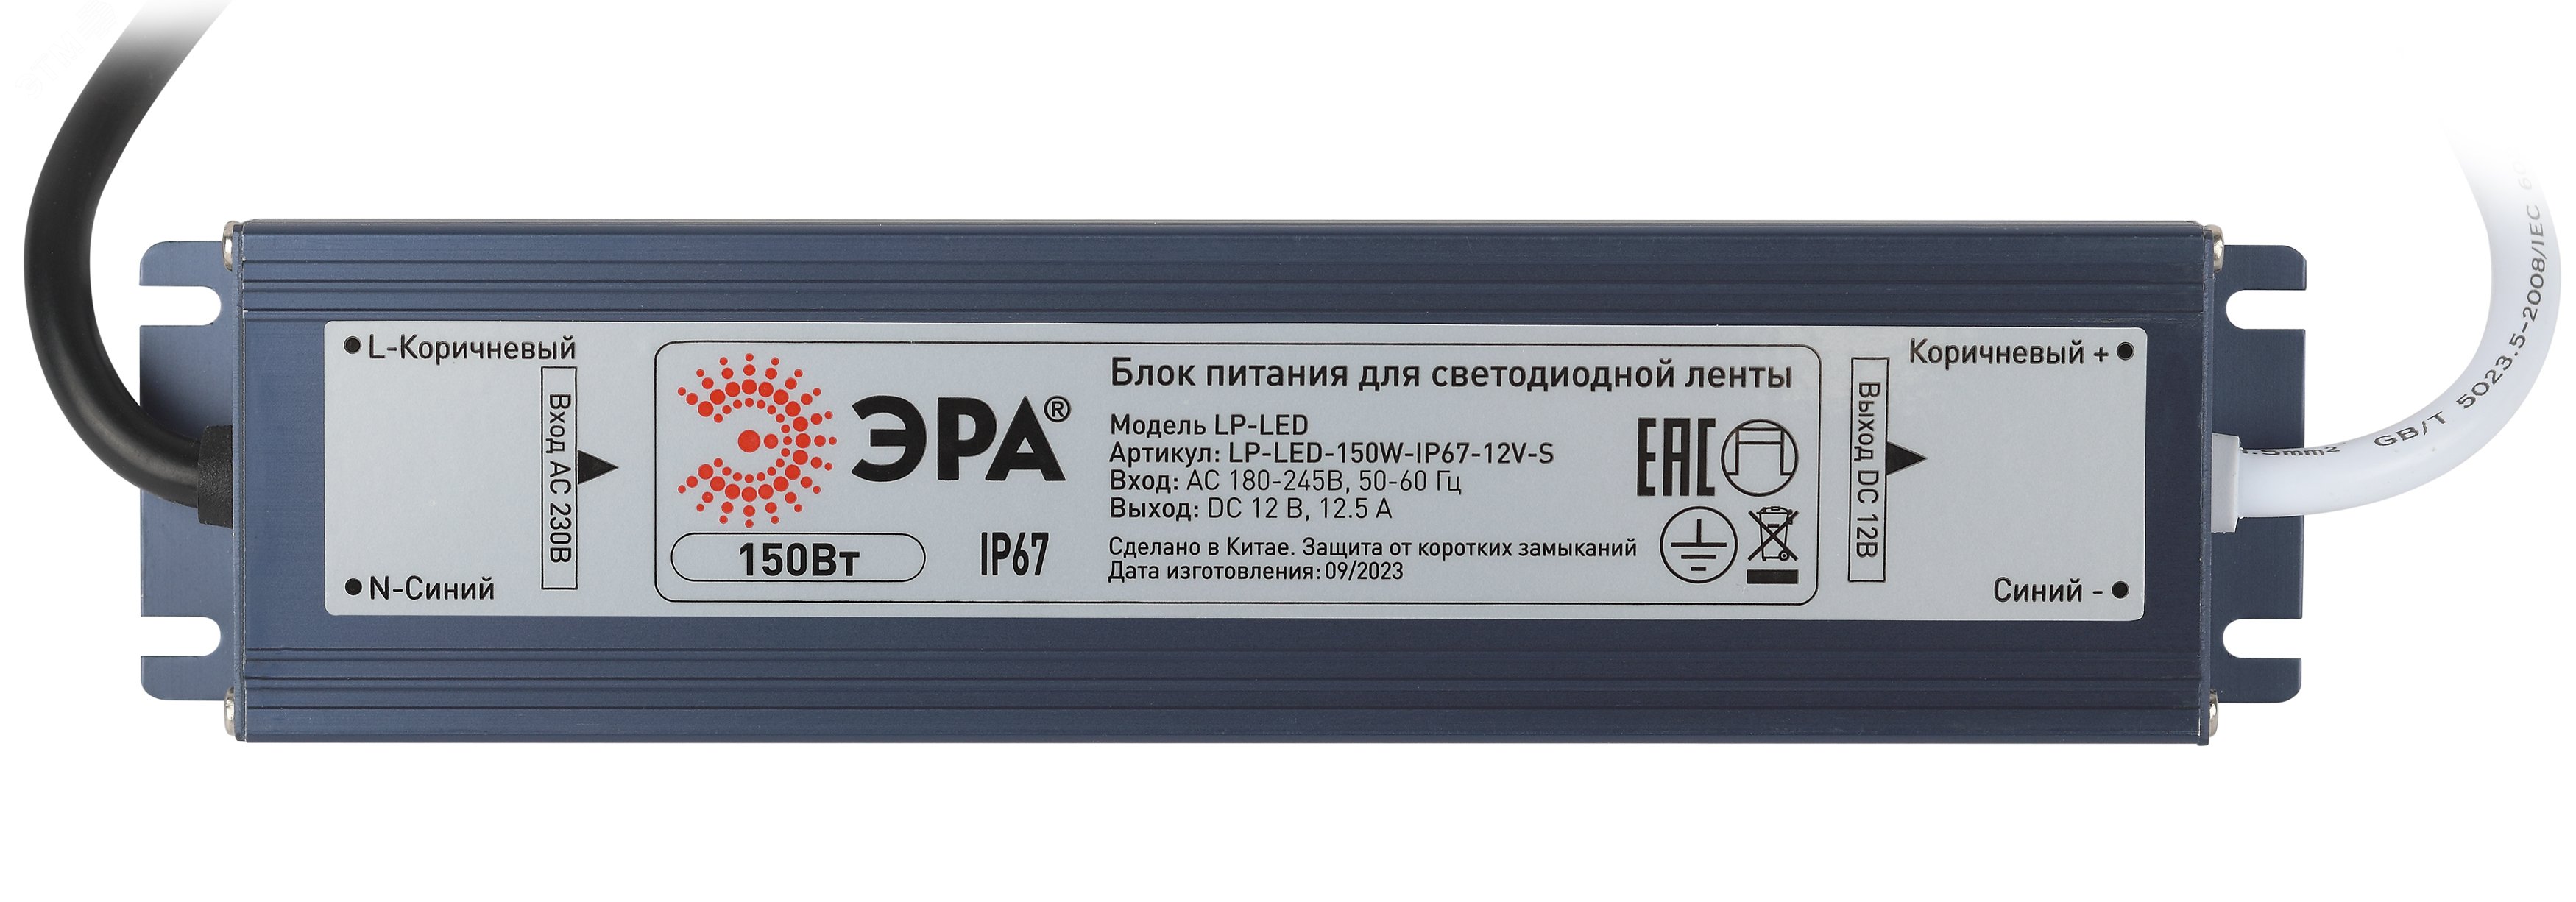 Блок питания для светодиодной ленты LP-LED 150W-IP67-24V-S Б0061146 ЭРА - превью 2